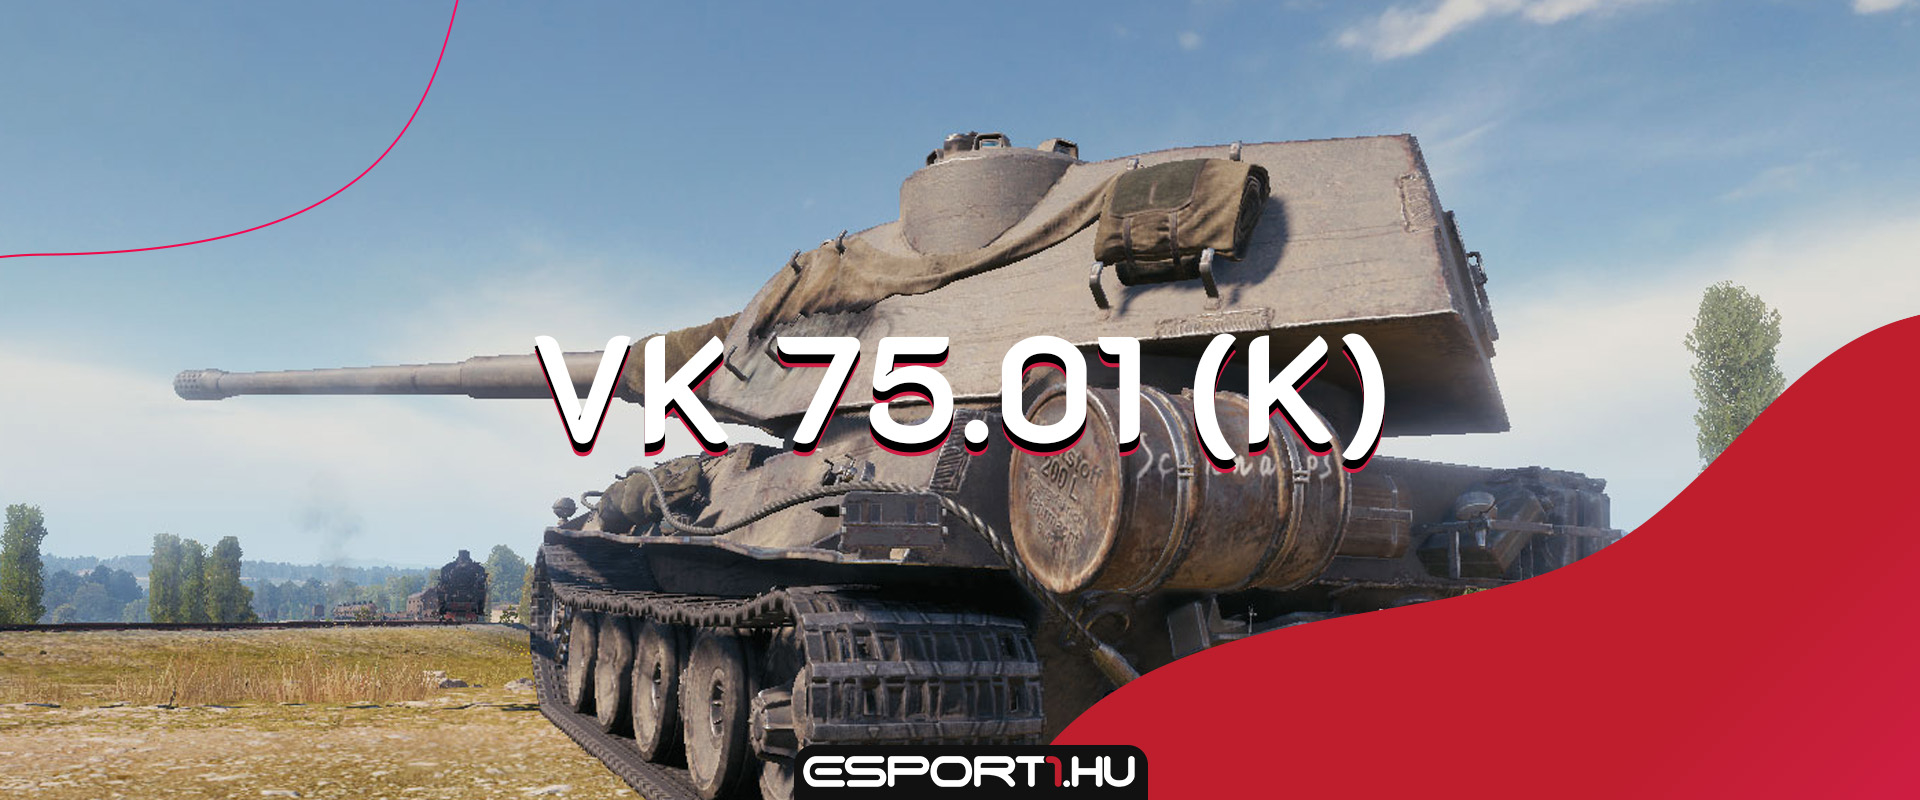 Itt a VK 75.01 (K), mert prémium német nehéz tankból sosem elég!